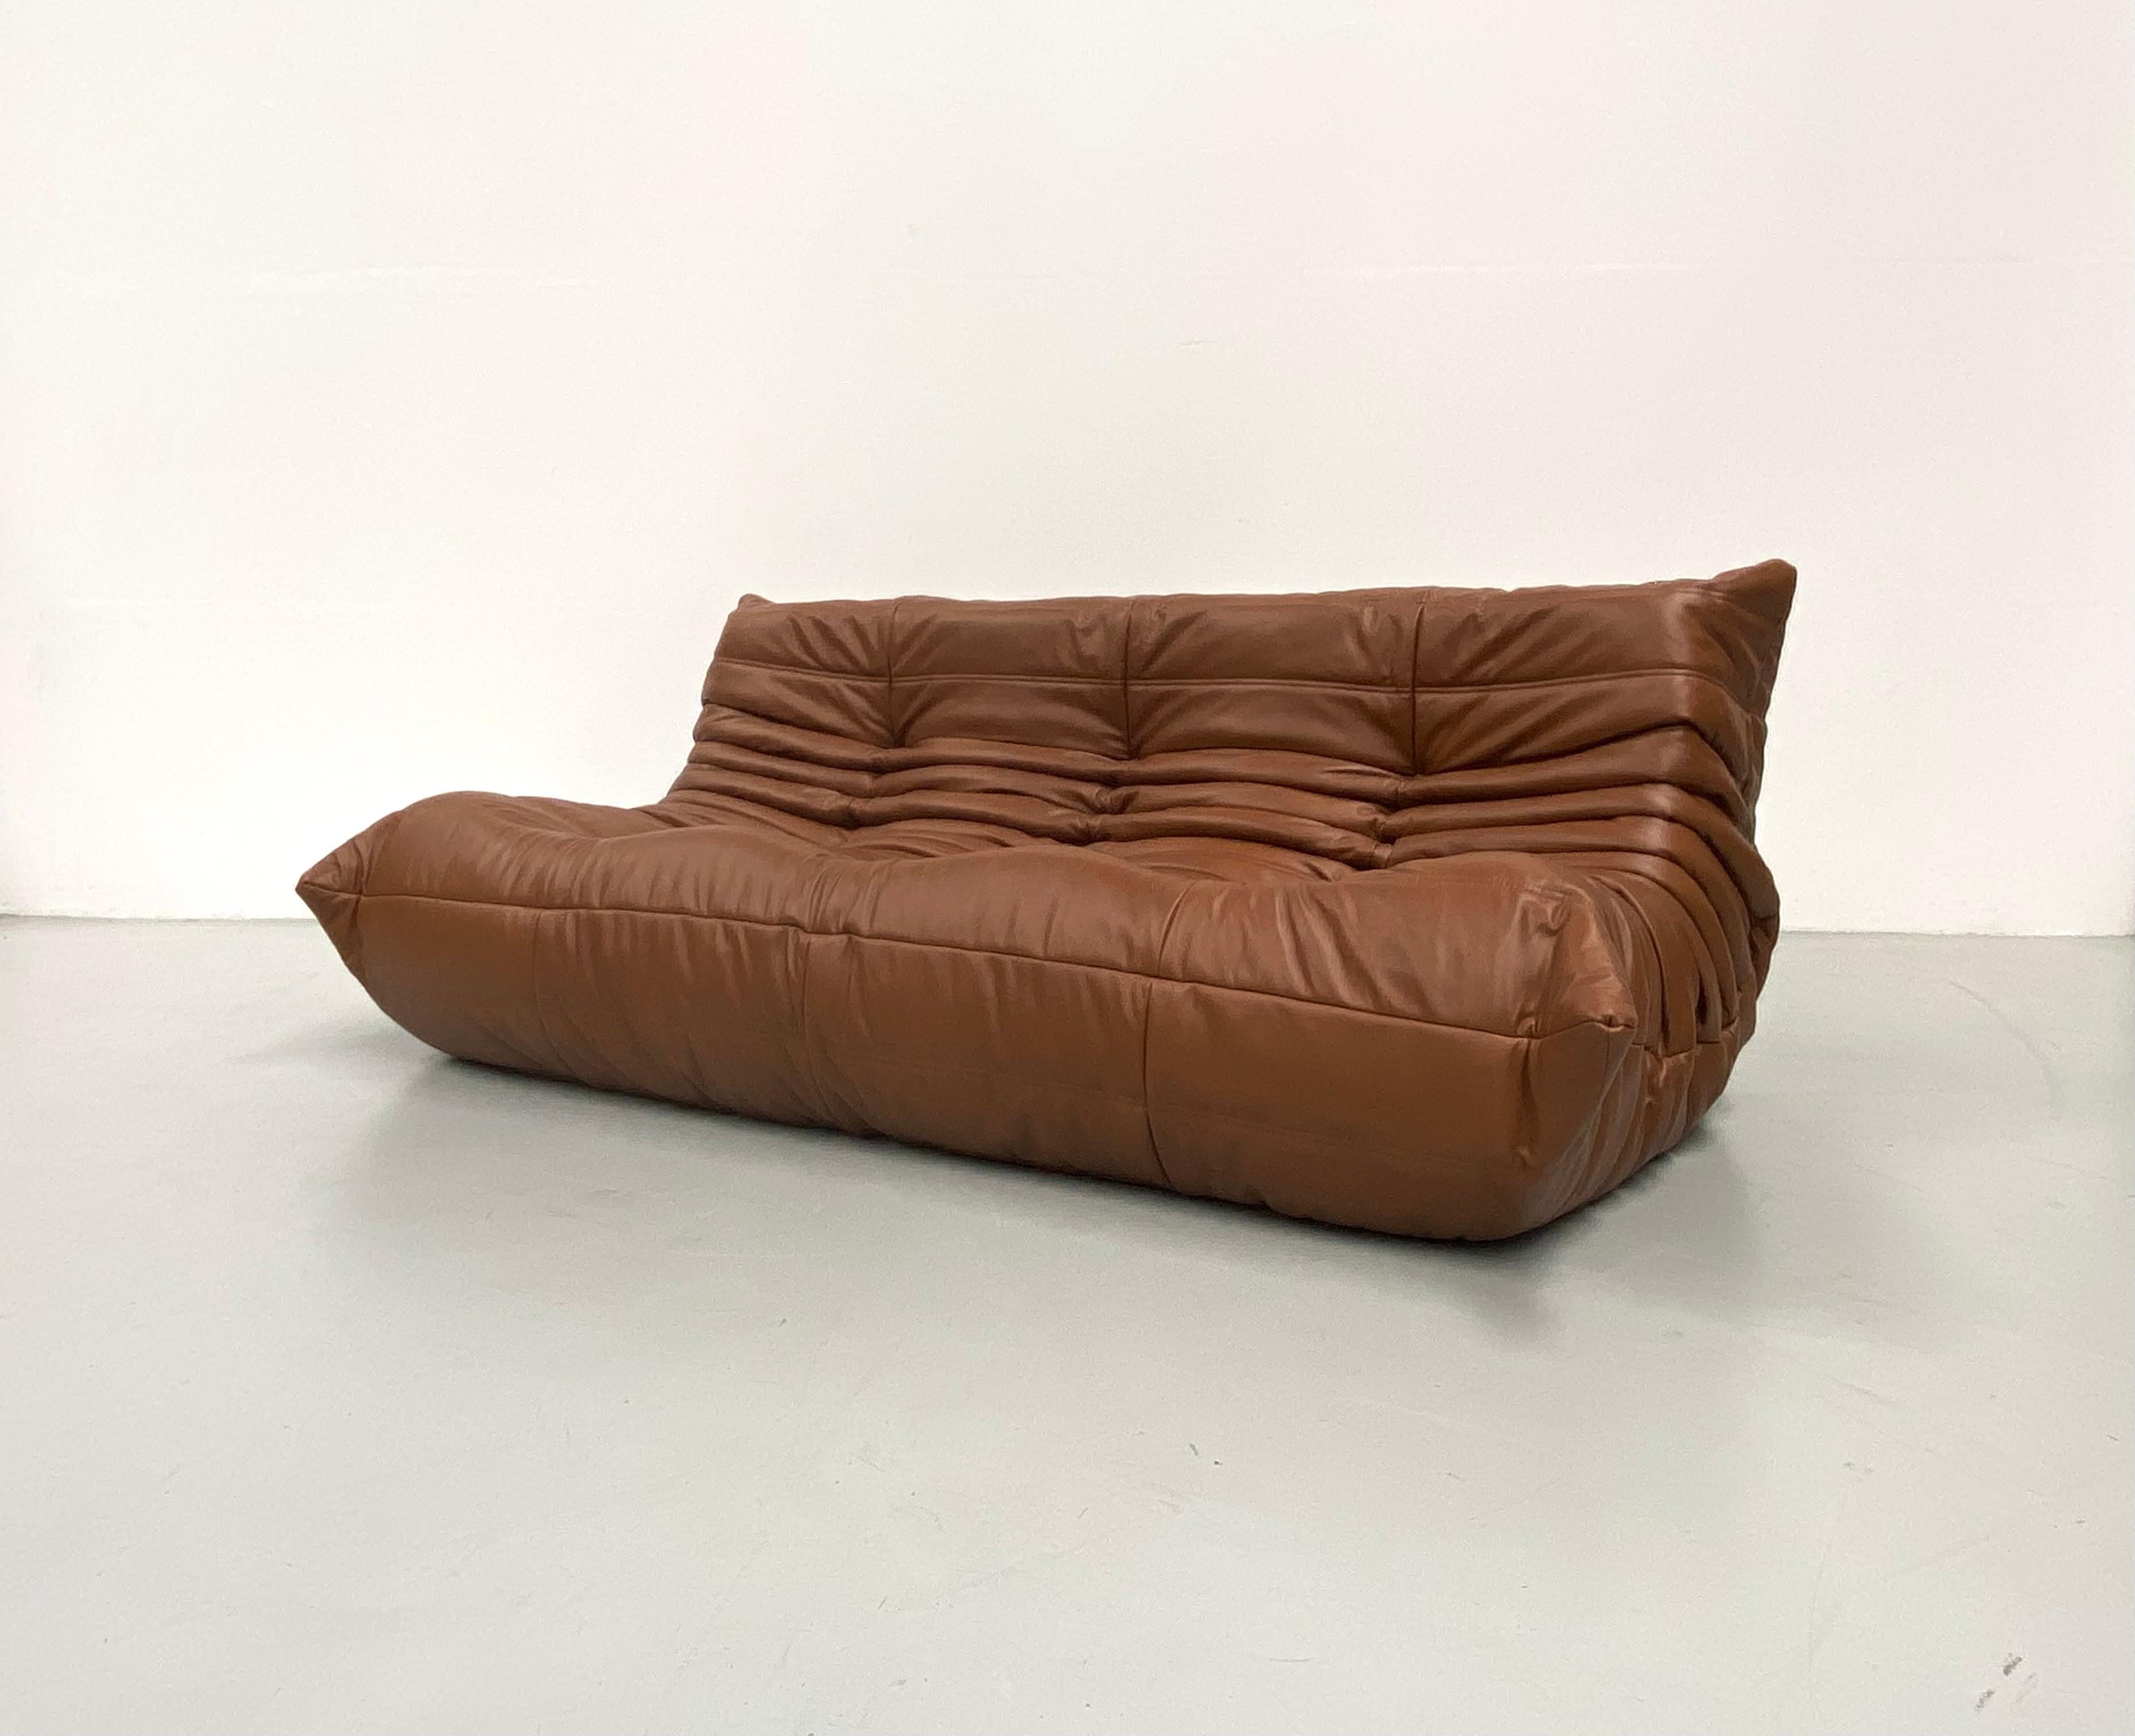 Der Togo wurde 1973 von Michel Ducaroy entworfen.  Es ist das erste Sofa/Sessel, das nur aus Schaumstoff und Leder besteht. Das Innenleben besteht aus Schaumstoff in 5 verschiedenen Dichten. Hergestellt von Ligne Roset in Frankreich.